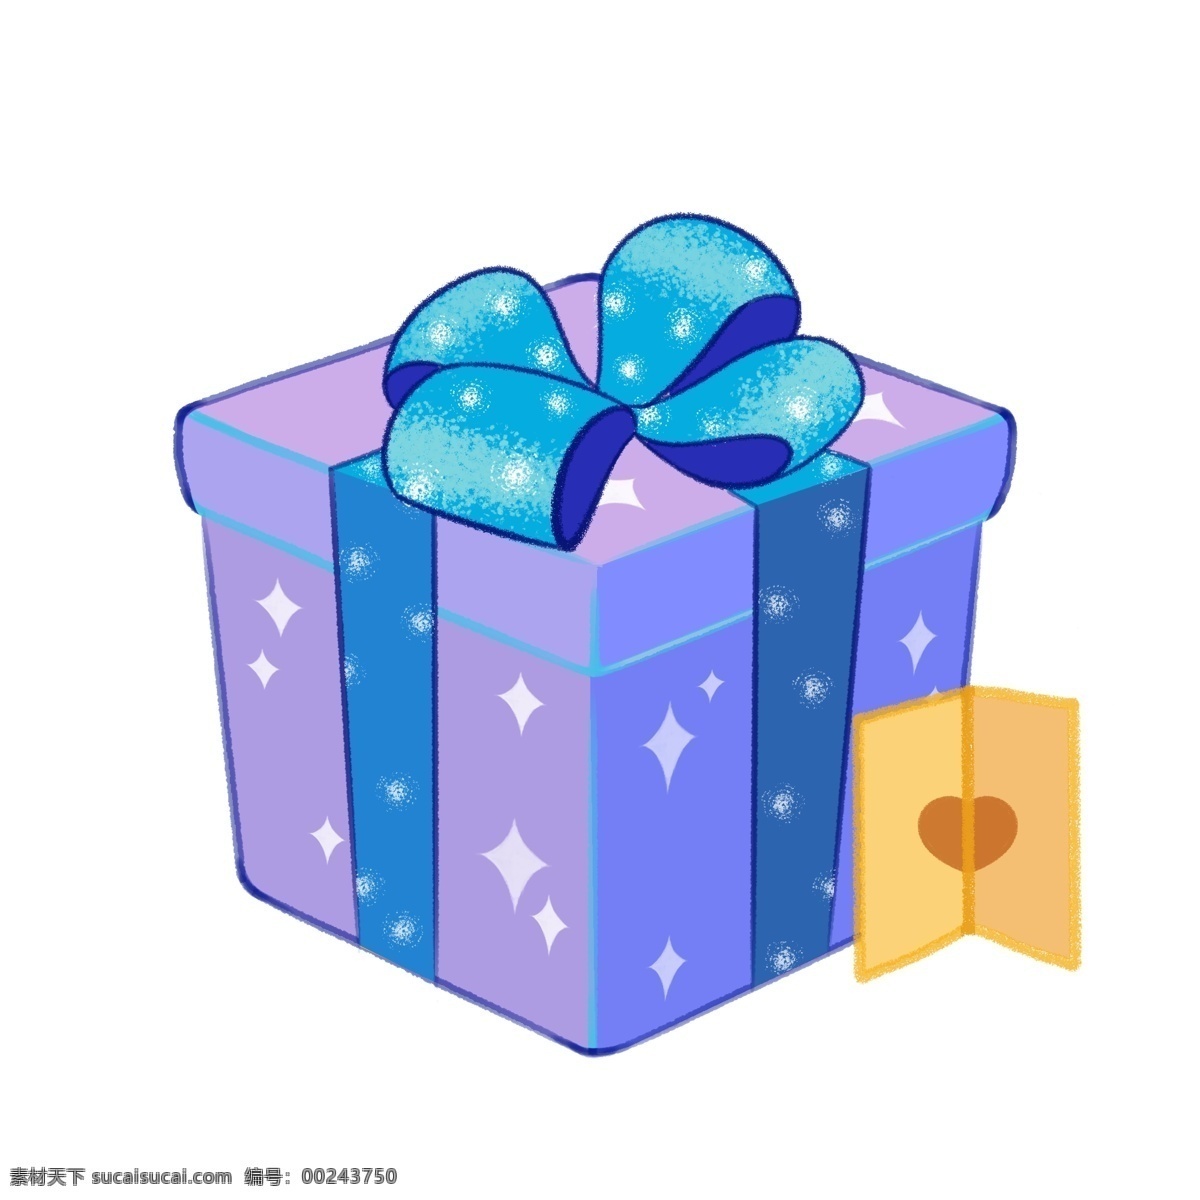 蓝色 梦幻 可爱 原创 手绘 礼品 礼物 盒 包装 礼品盒 丝带 蝴蝶结 盒子 礼物盒 礼物包装 生日礼物 少女心 蓝色梦幻 星星图案 礼花